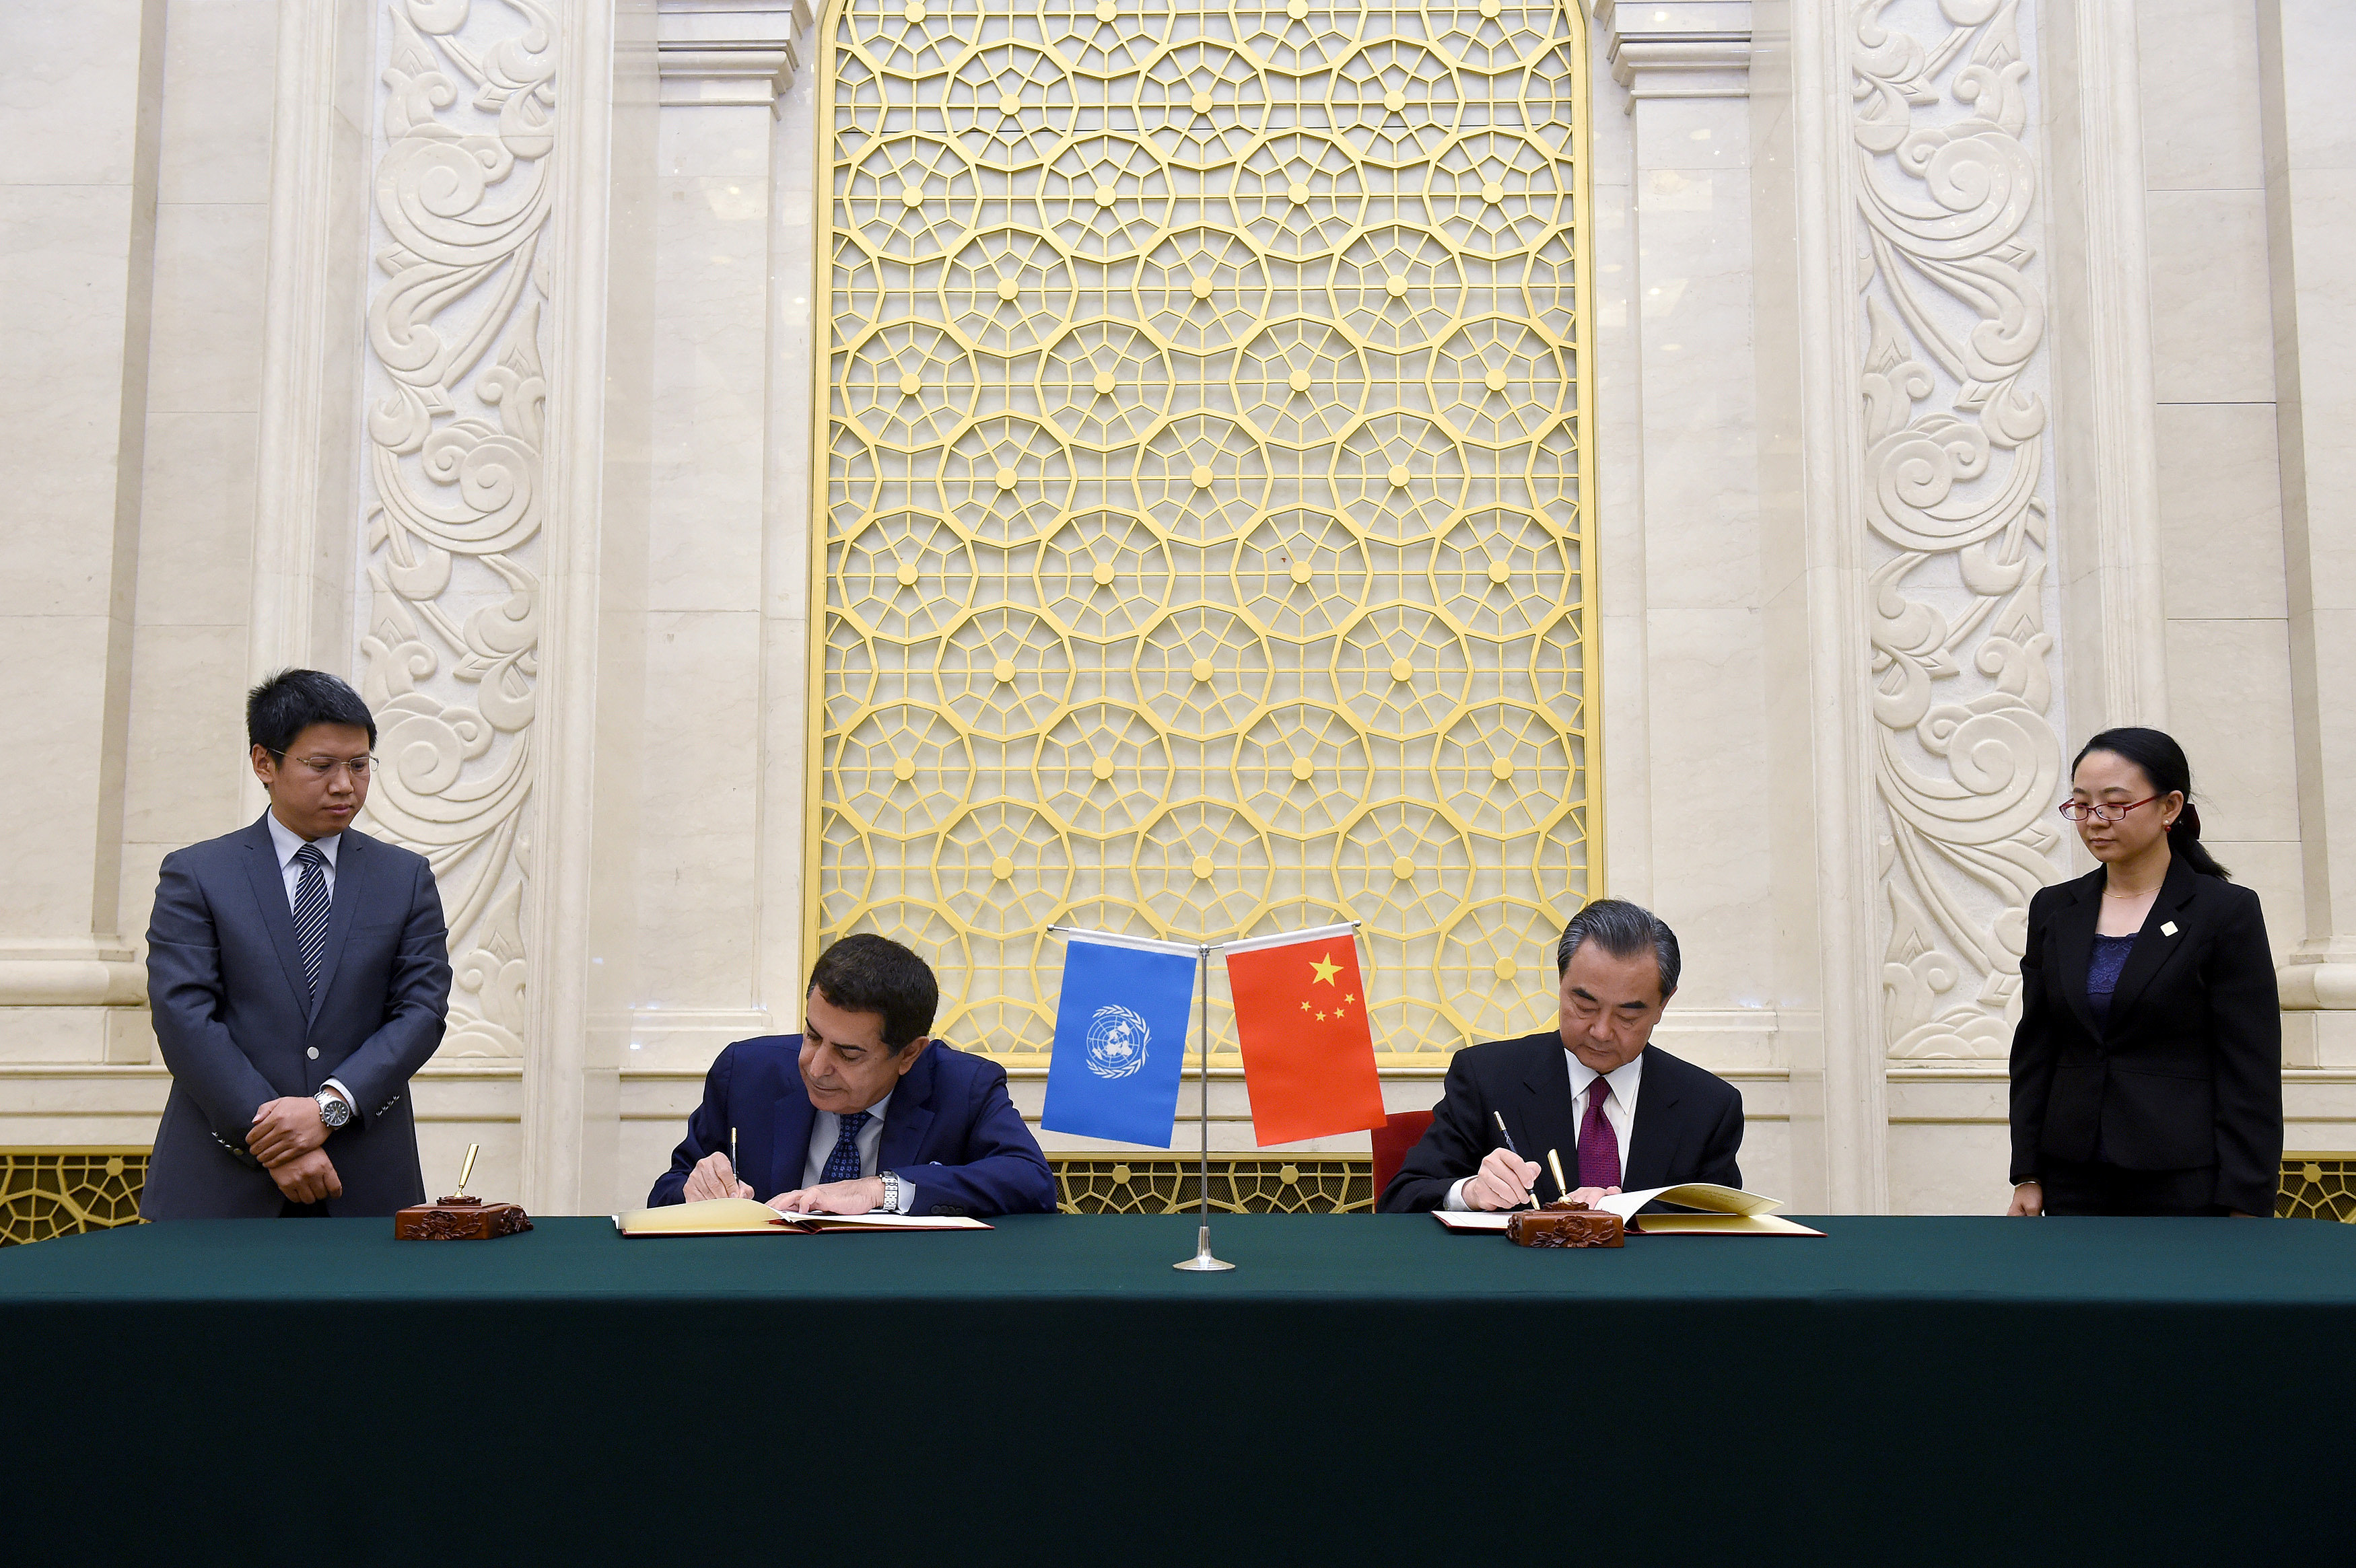 توقيع اتفاقية بين الصين وتحالف الأمم المتحدة للحضارات